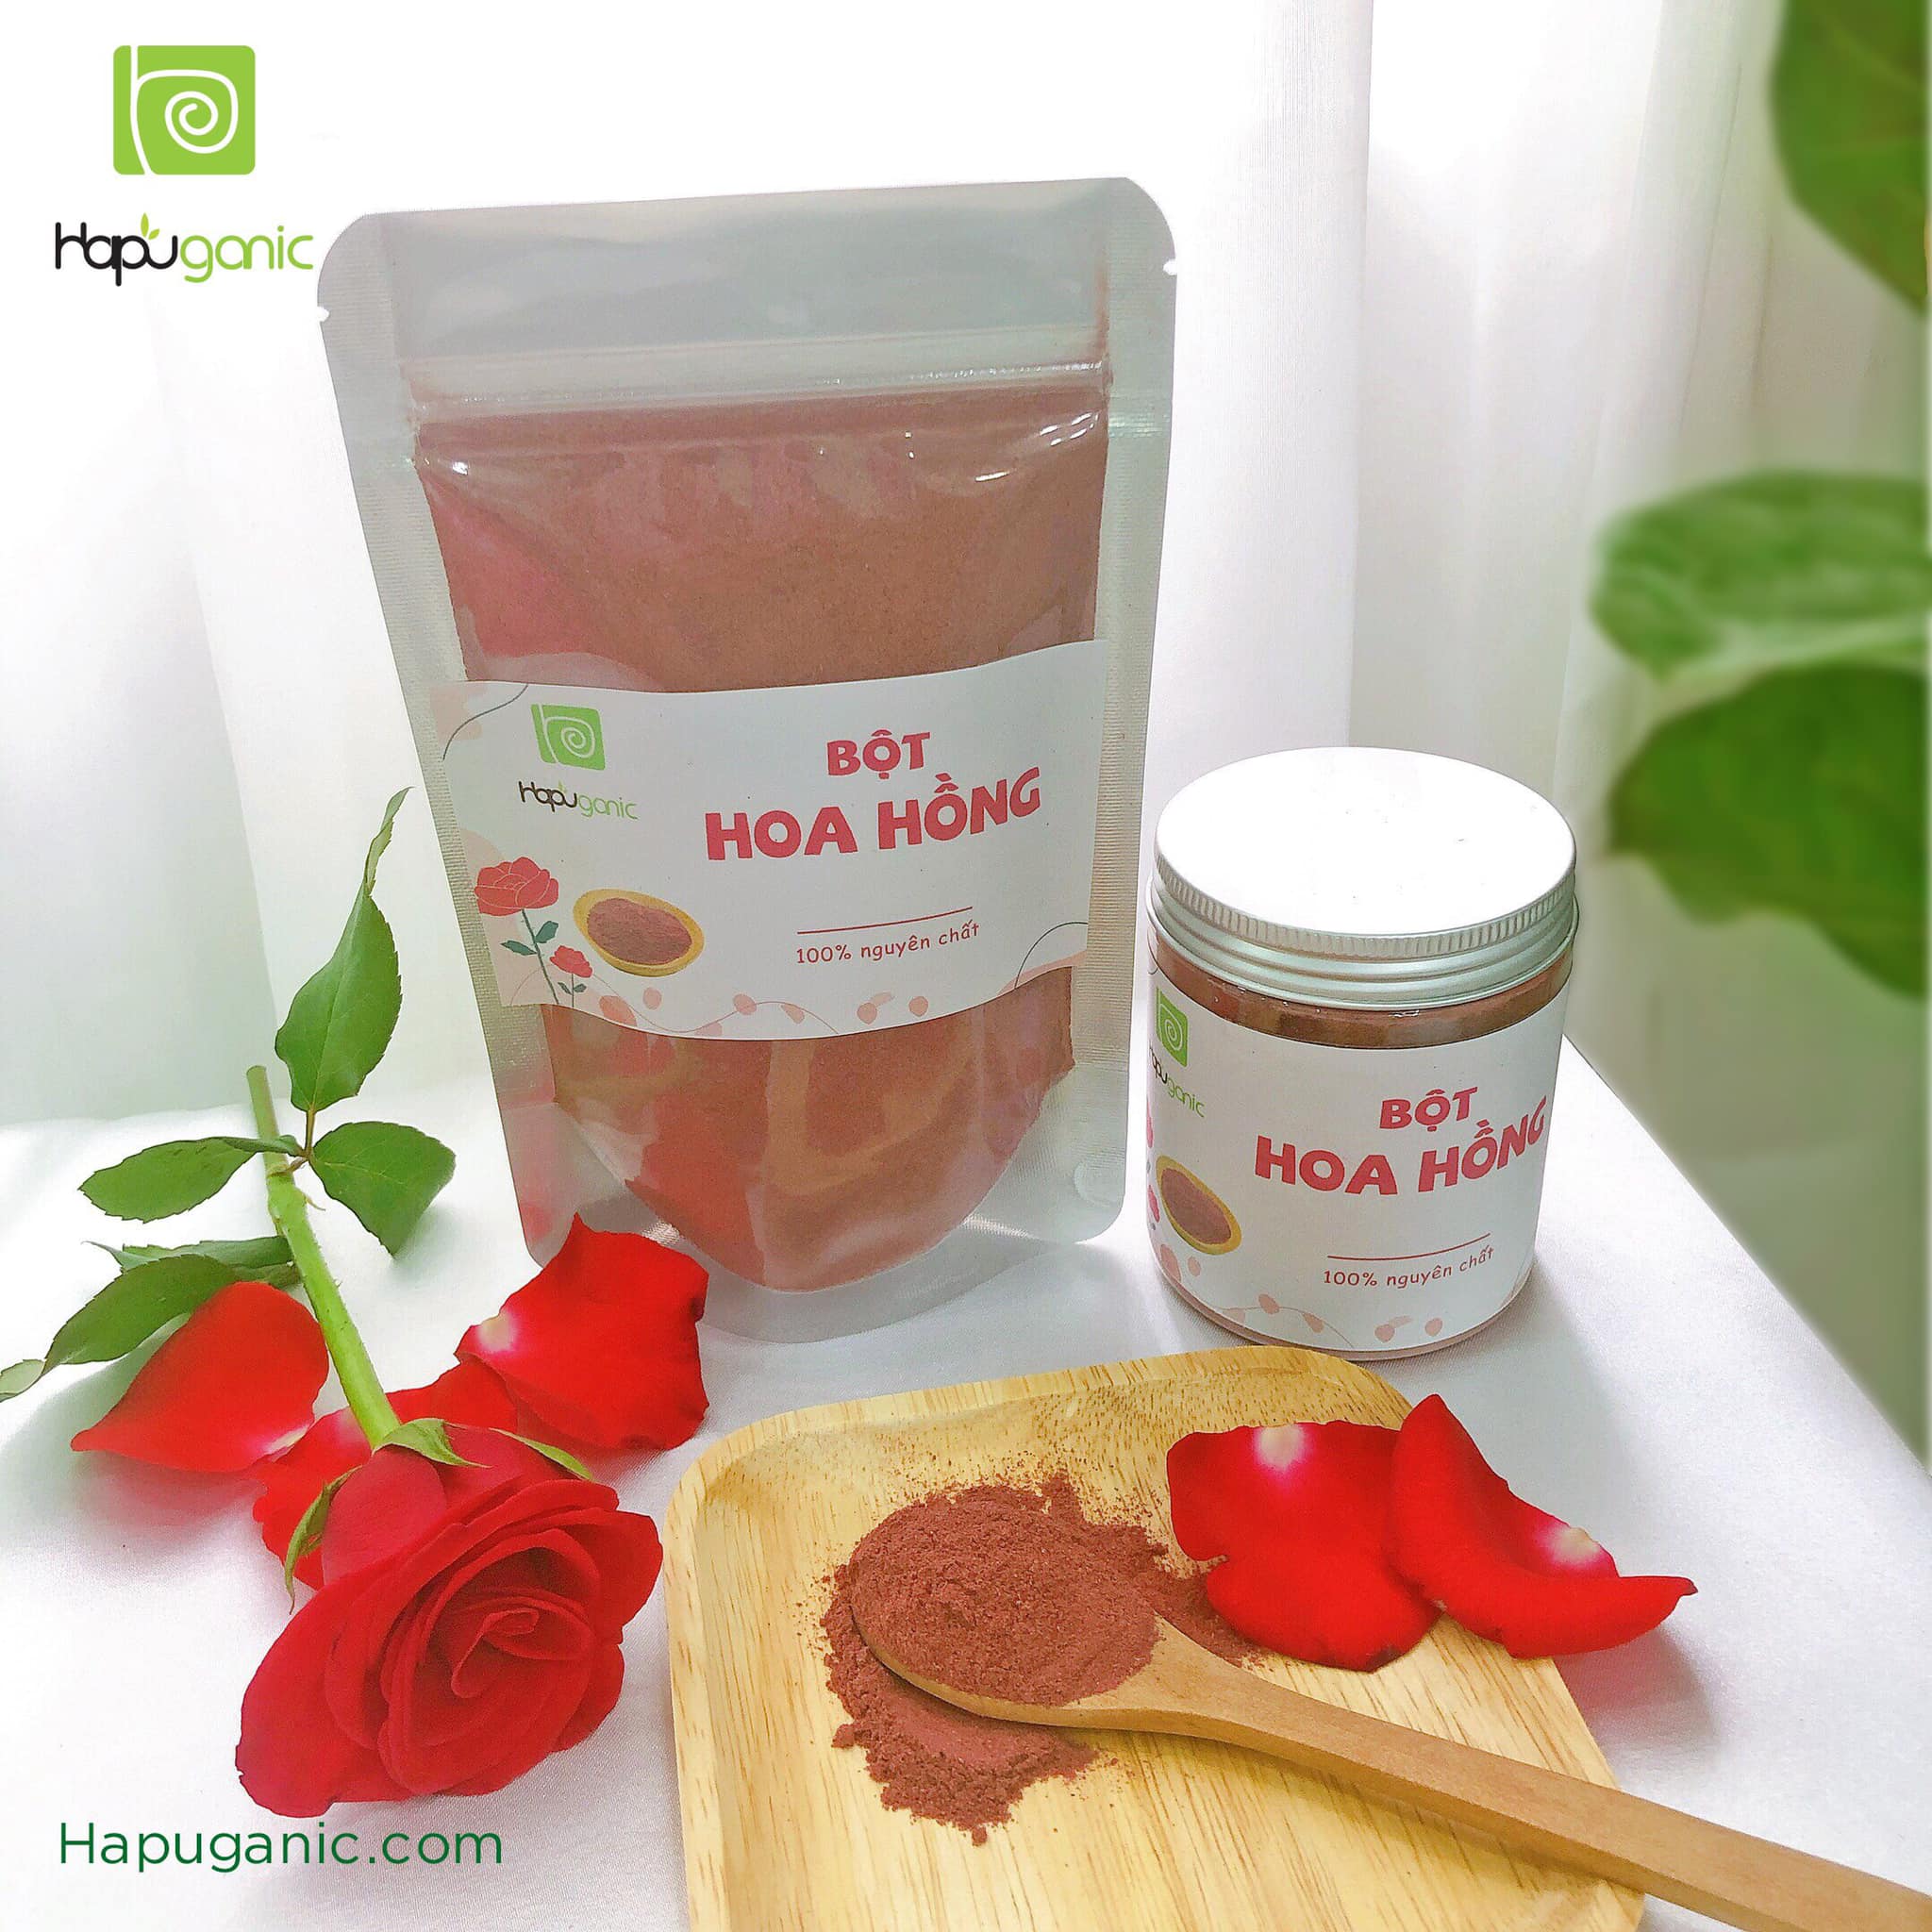 [HCM]Bột hoa hồng nguyên chất Hapuganic chỗng lão hóa dưỡng ẩm và và giảm thâm mụn